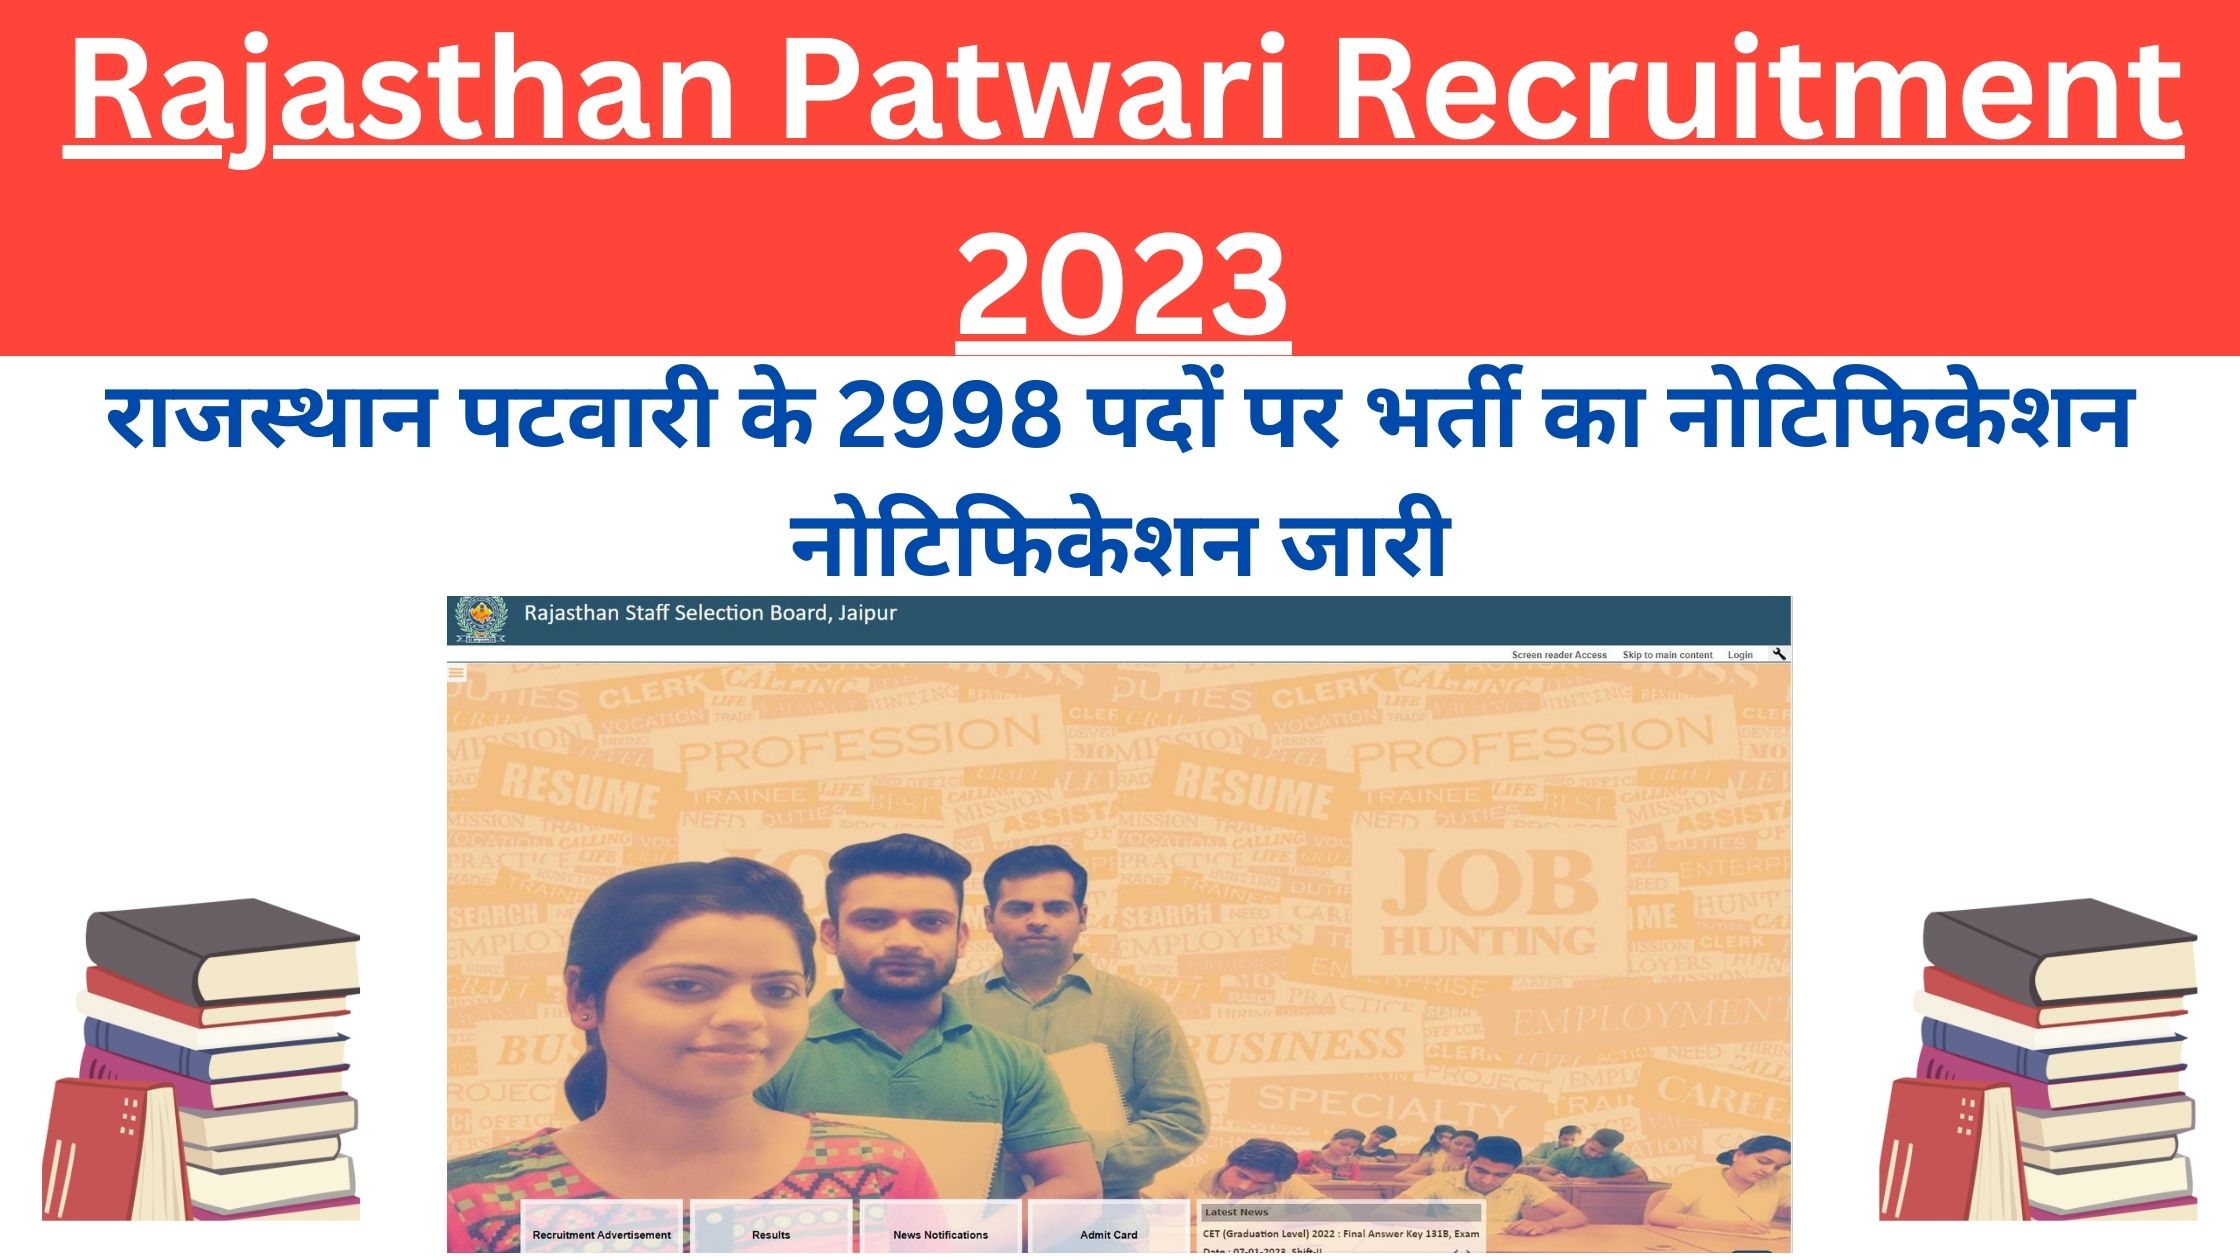 Rajasthan Patwari Recruitment 2023 Apply Now